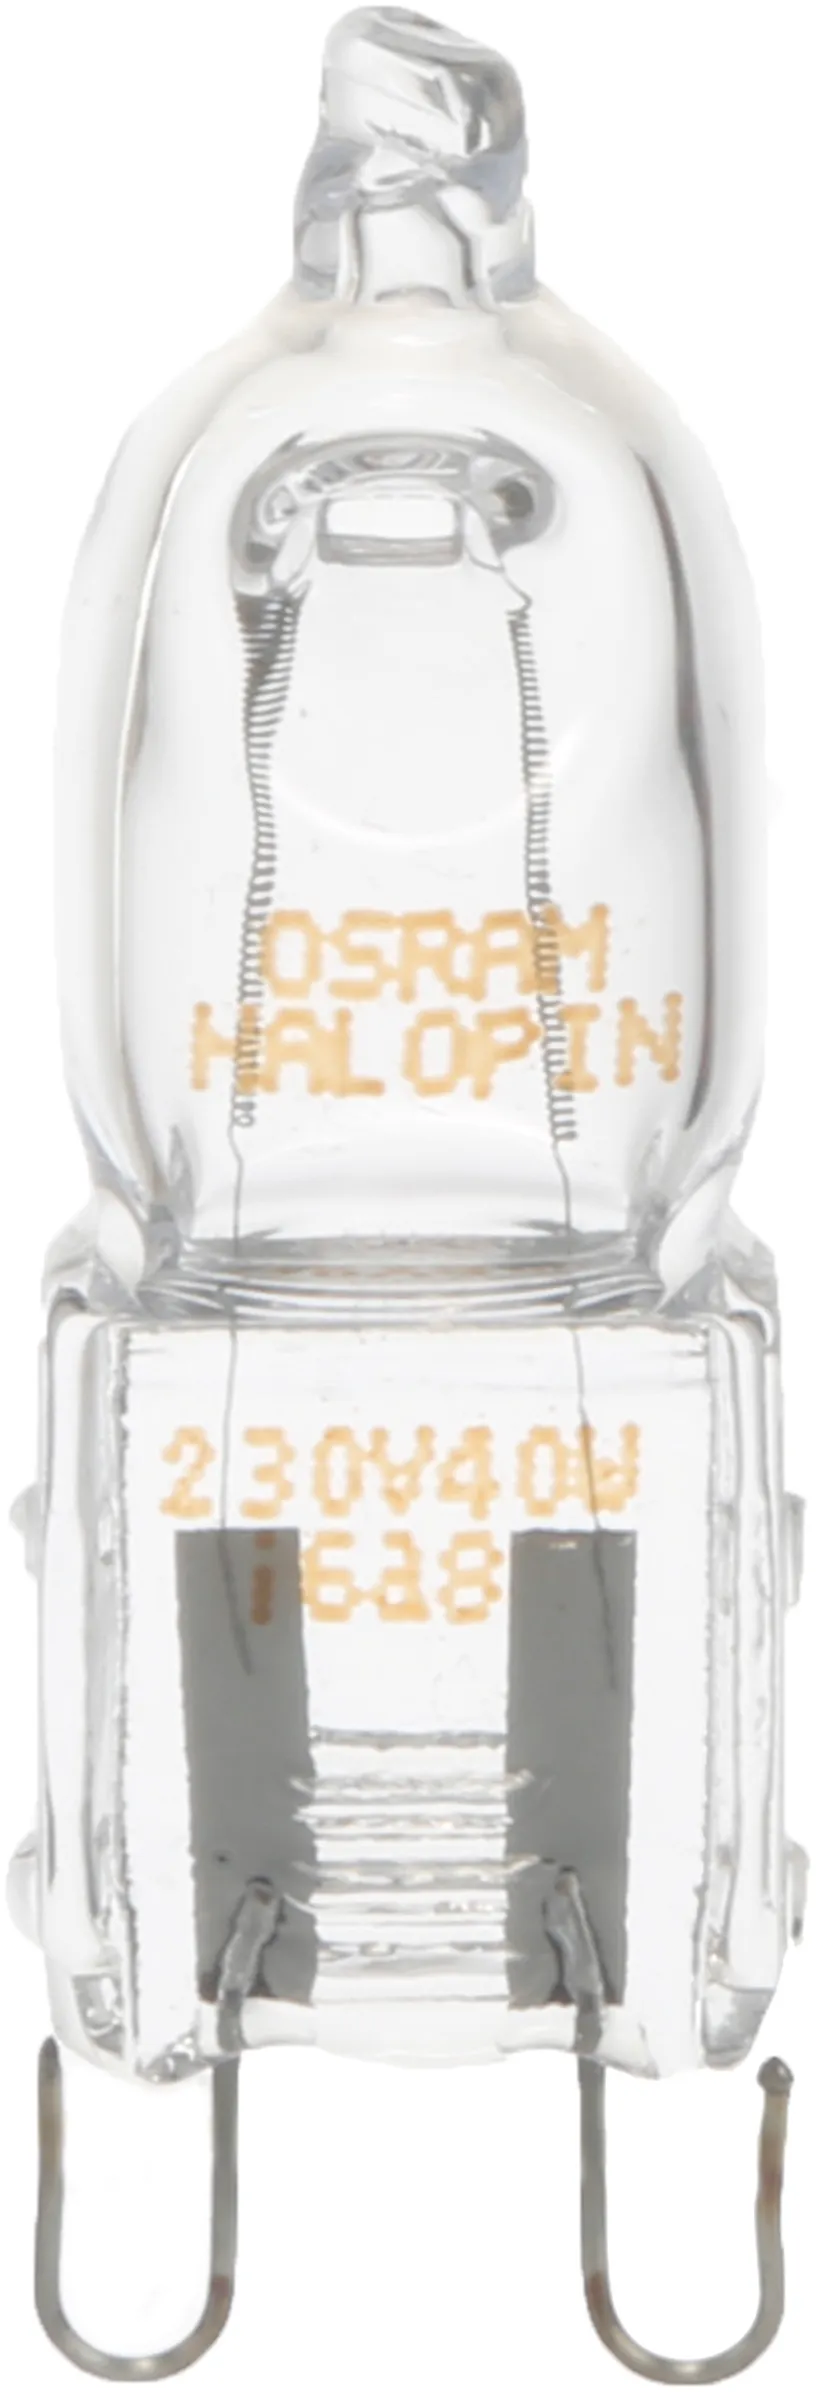 Halogen lamp G9, 40W, 230V, 490lm, 2700K, warm white optimal halogen composition for high temperatures 